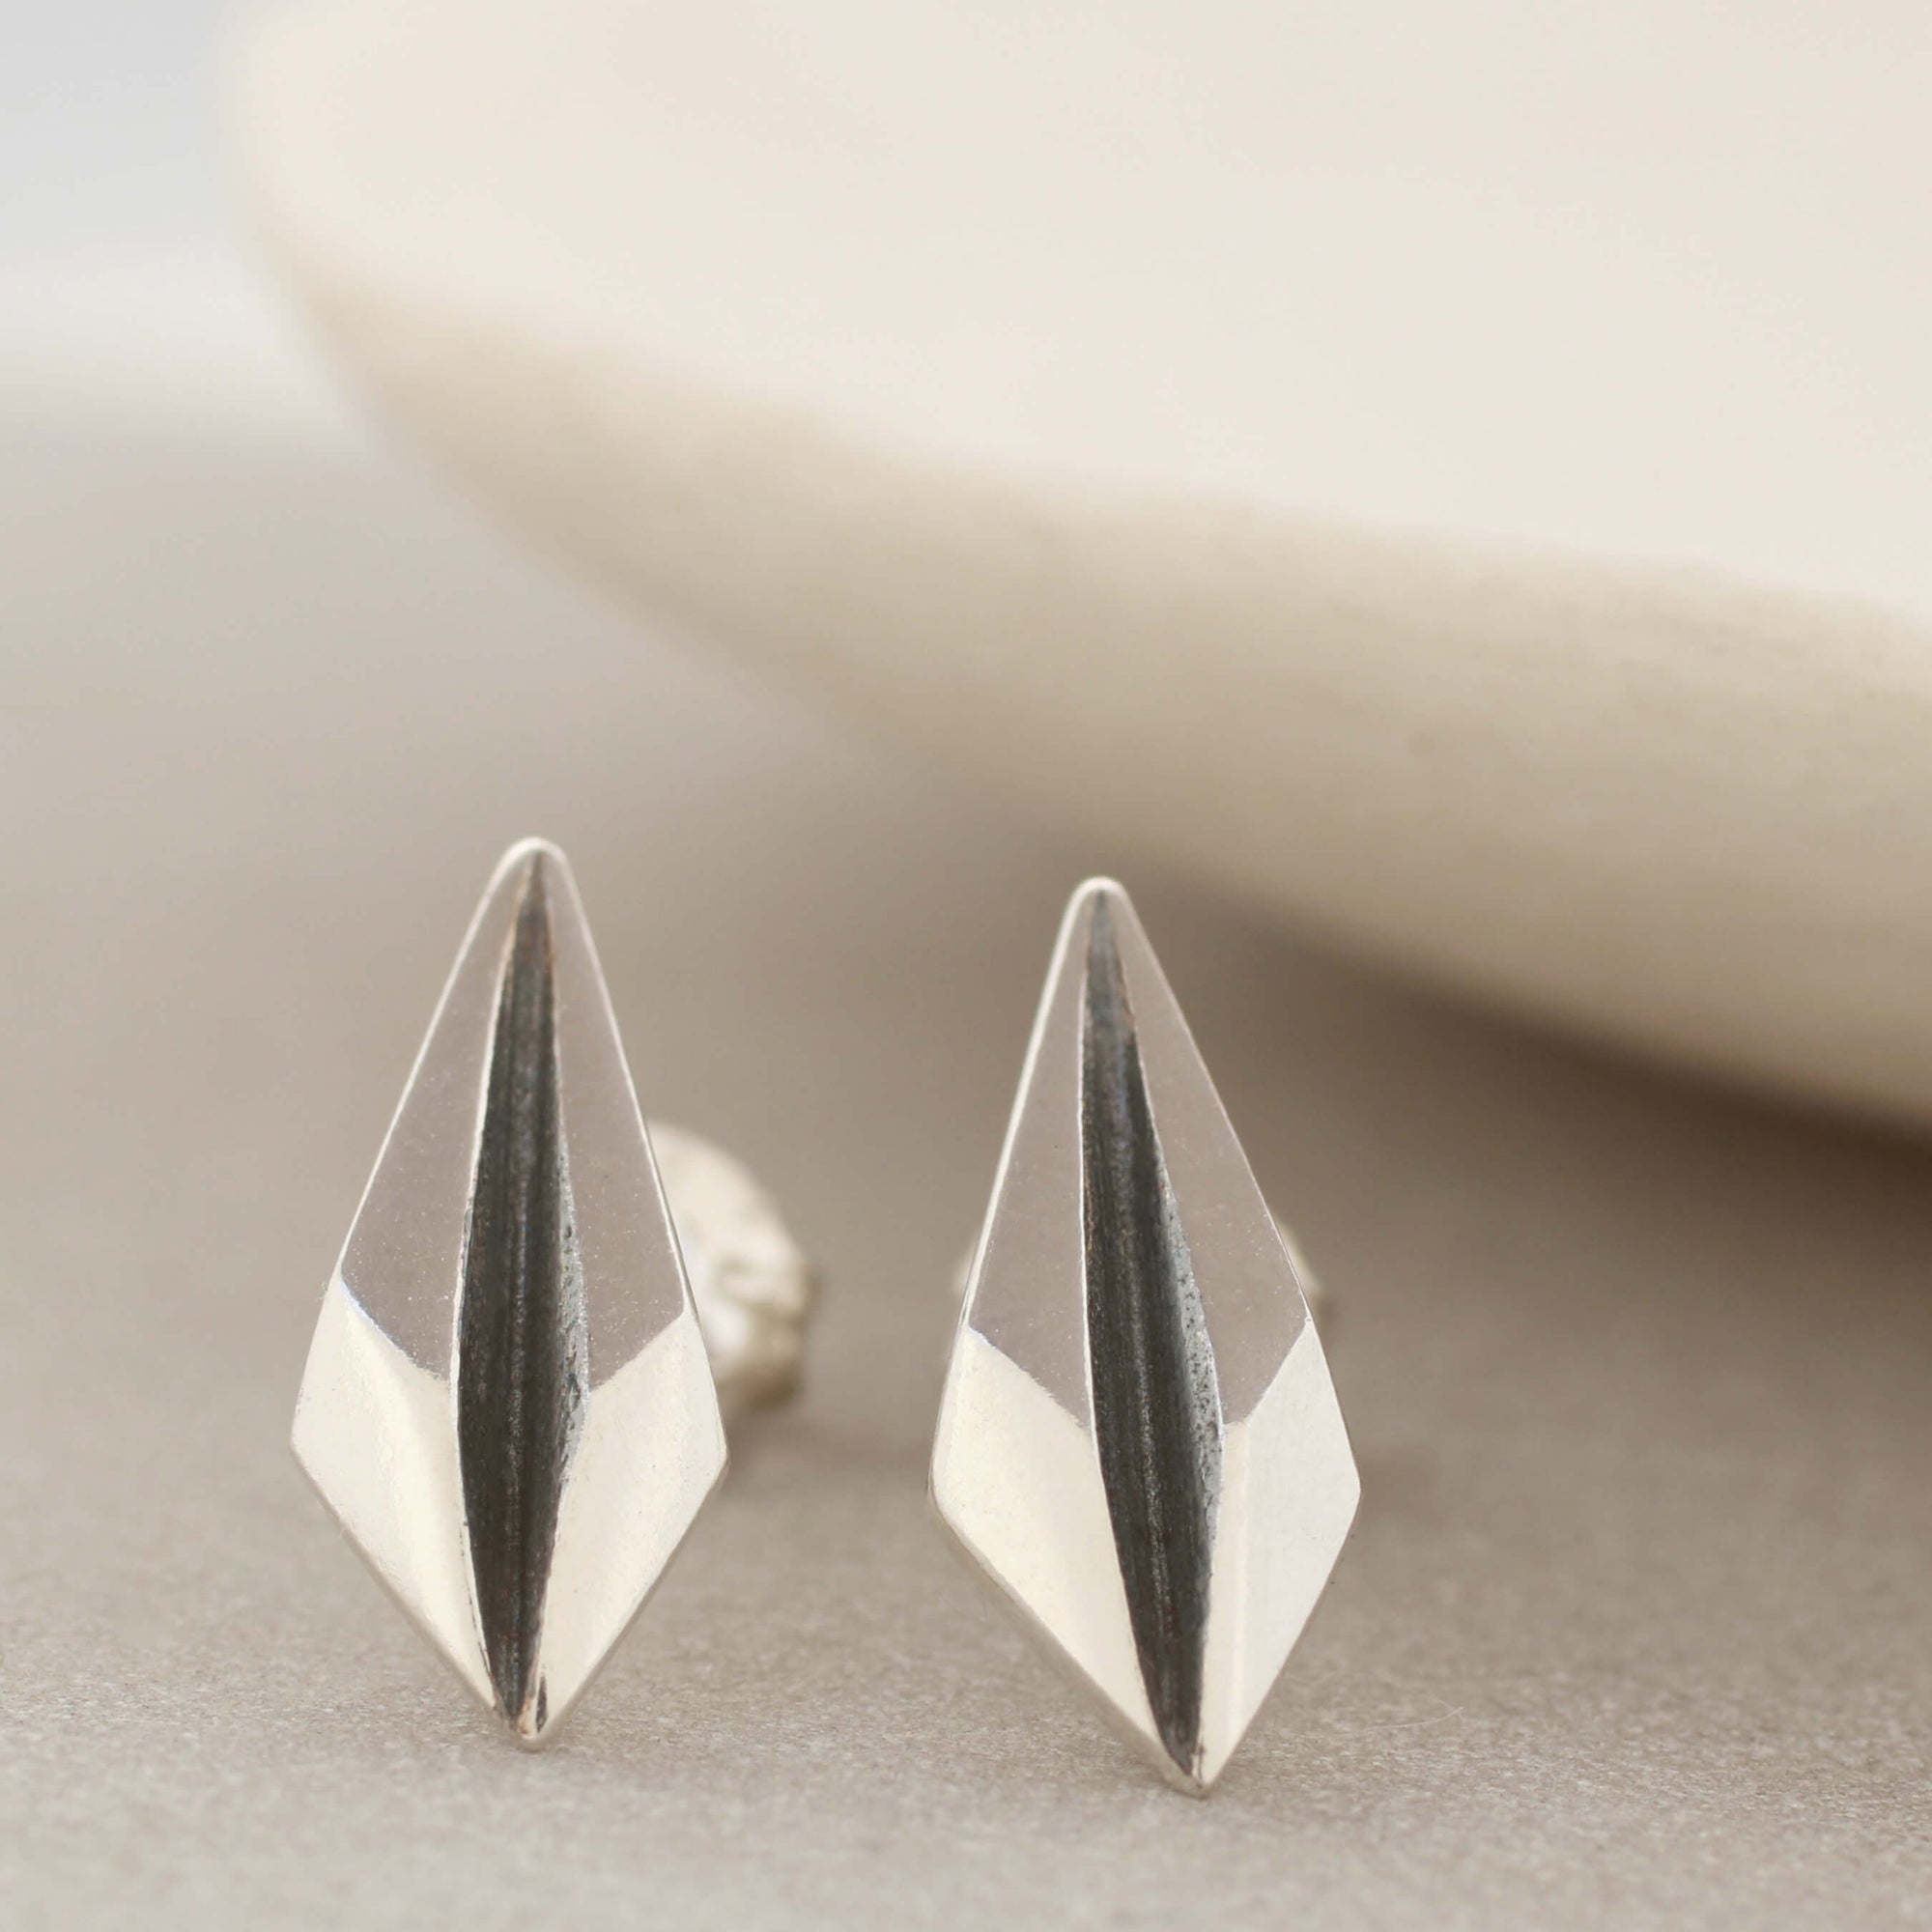 Geometric earrings